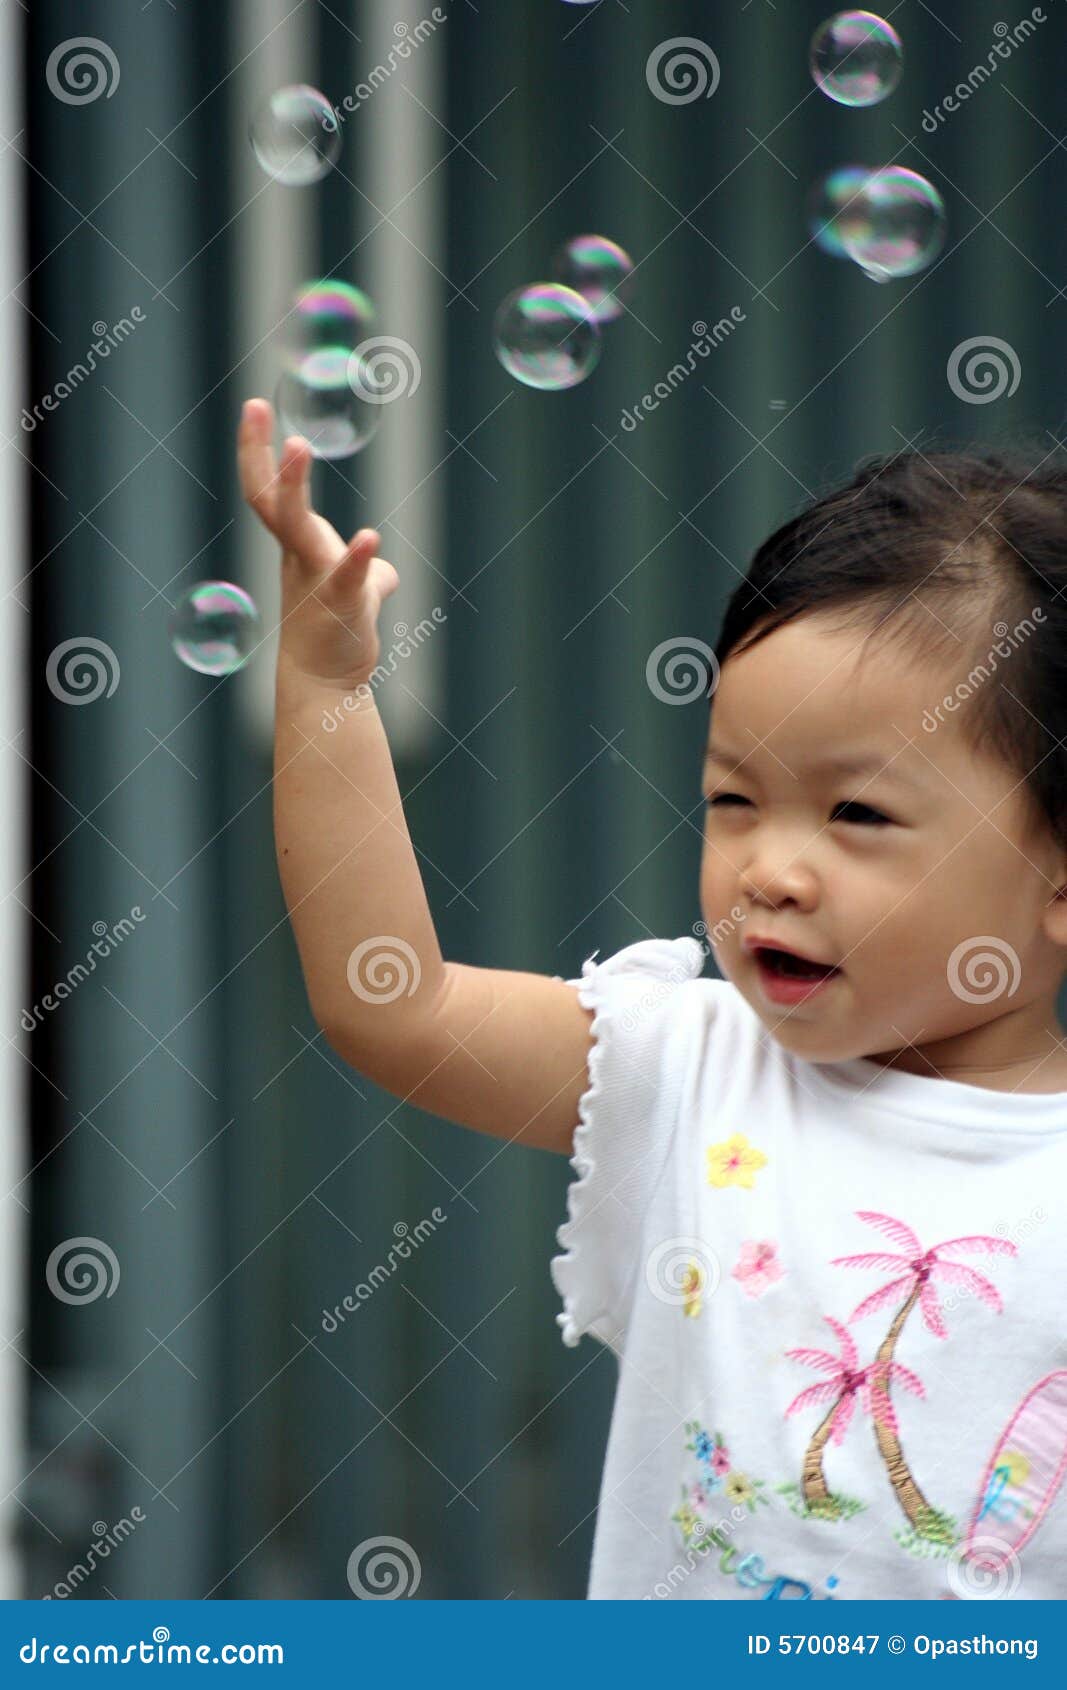 Asian Man Chasing Smiling Girl Stock Photography | CartoonDealer.com ...